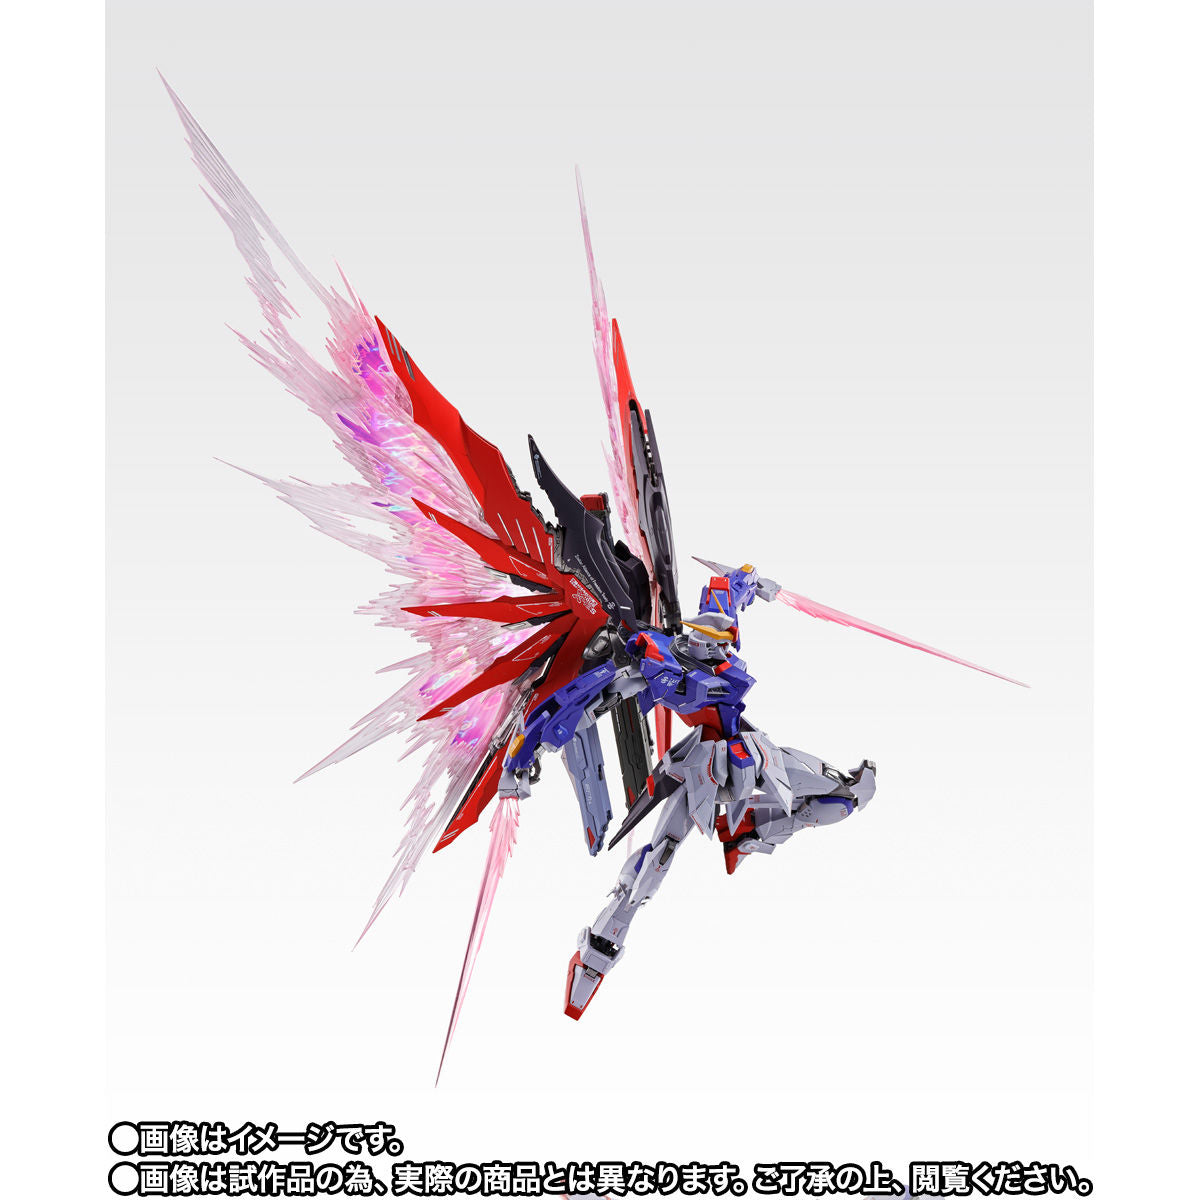 METAL BUILD Destiny Gundam SOUL RED Ver. Figure